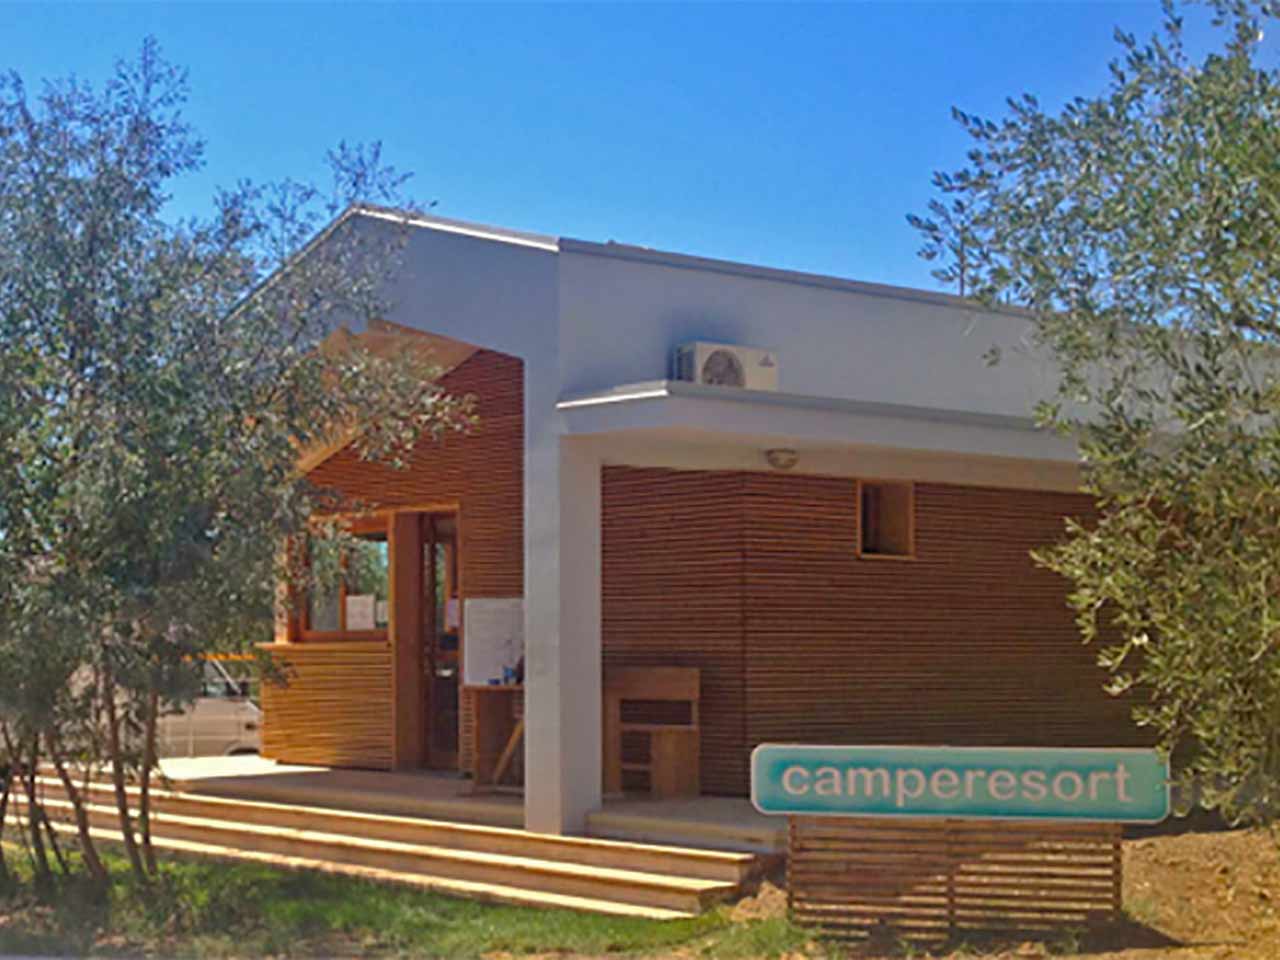 Aree sosta camper in Toscana: Camperesort a Castagneto Carducci (LI).